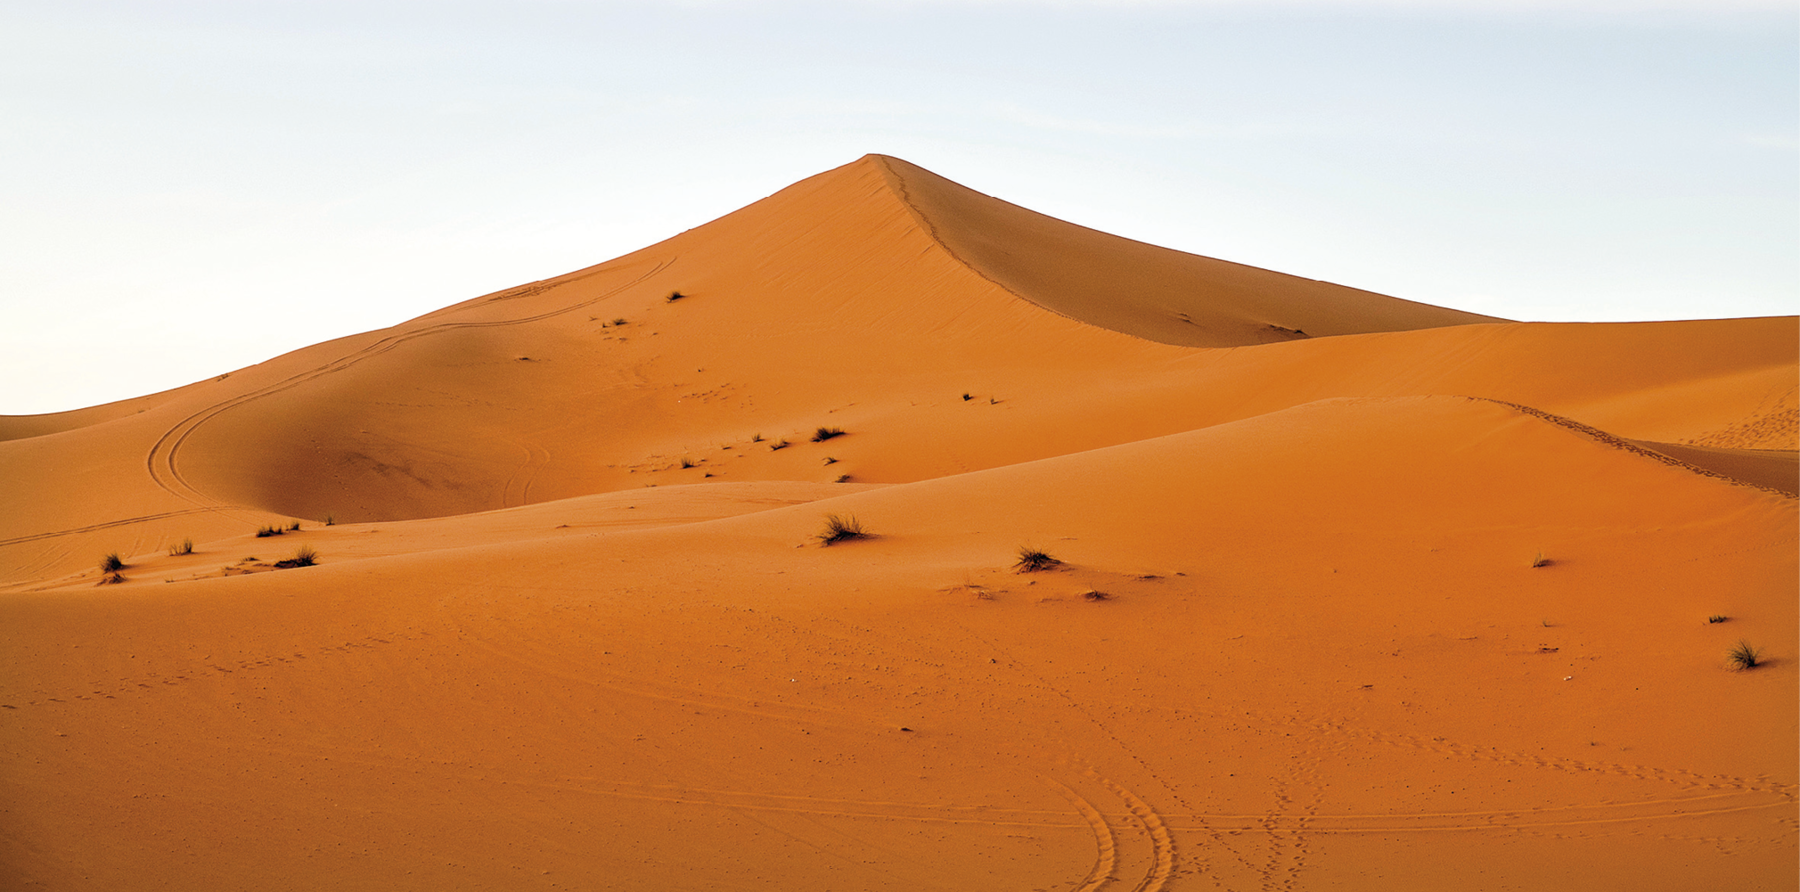 Fotografia. Vista panorâmica de uma duna alaranjada no deserto. Acima, o céu em tons de azul.